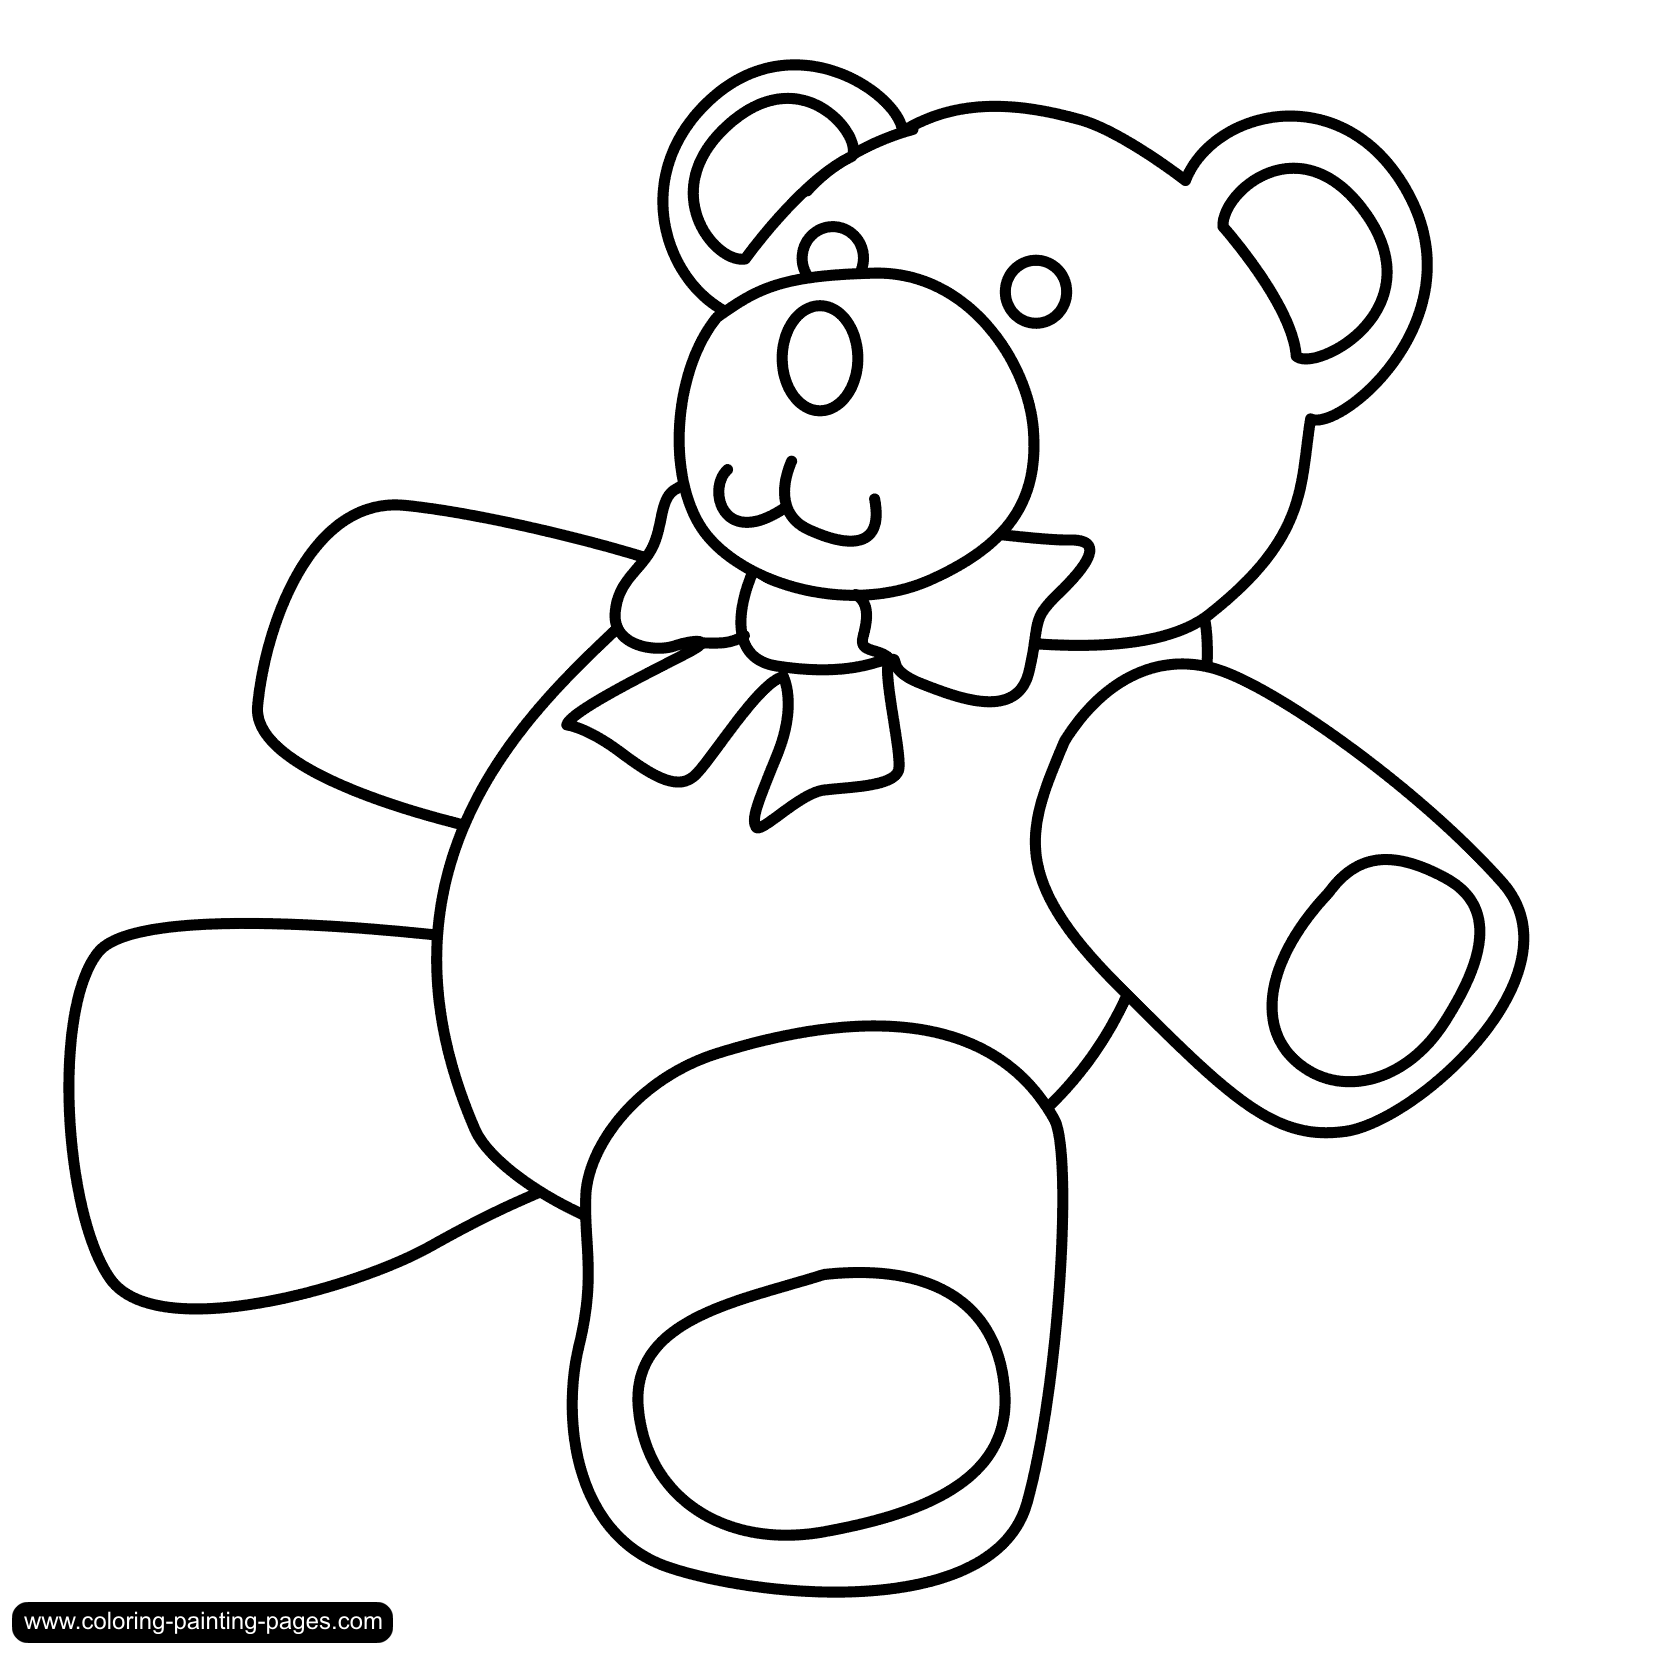 Teddy bear outline clipart